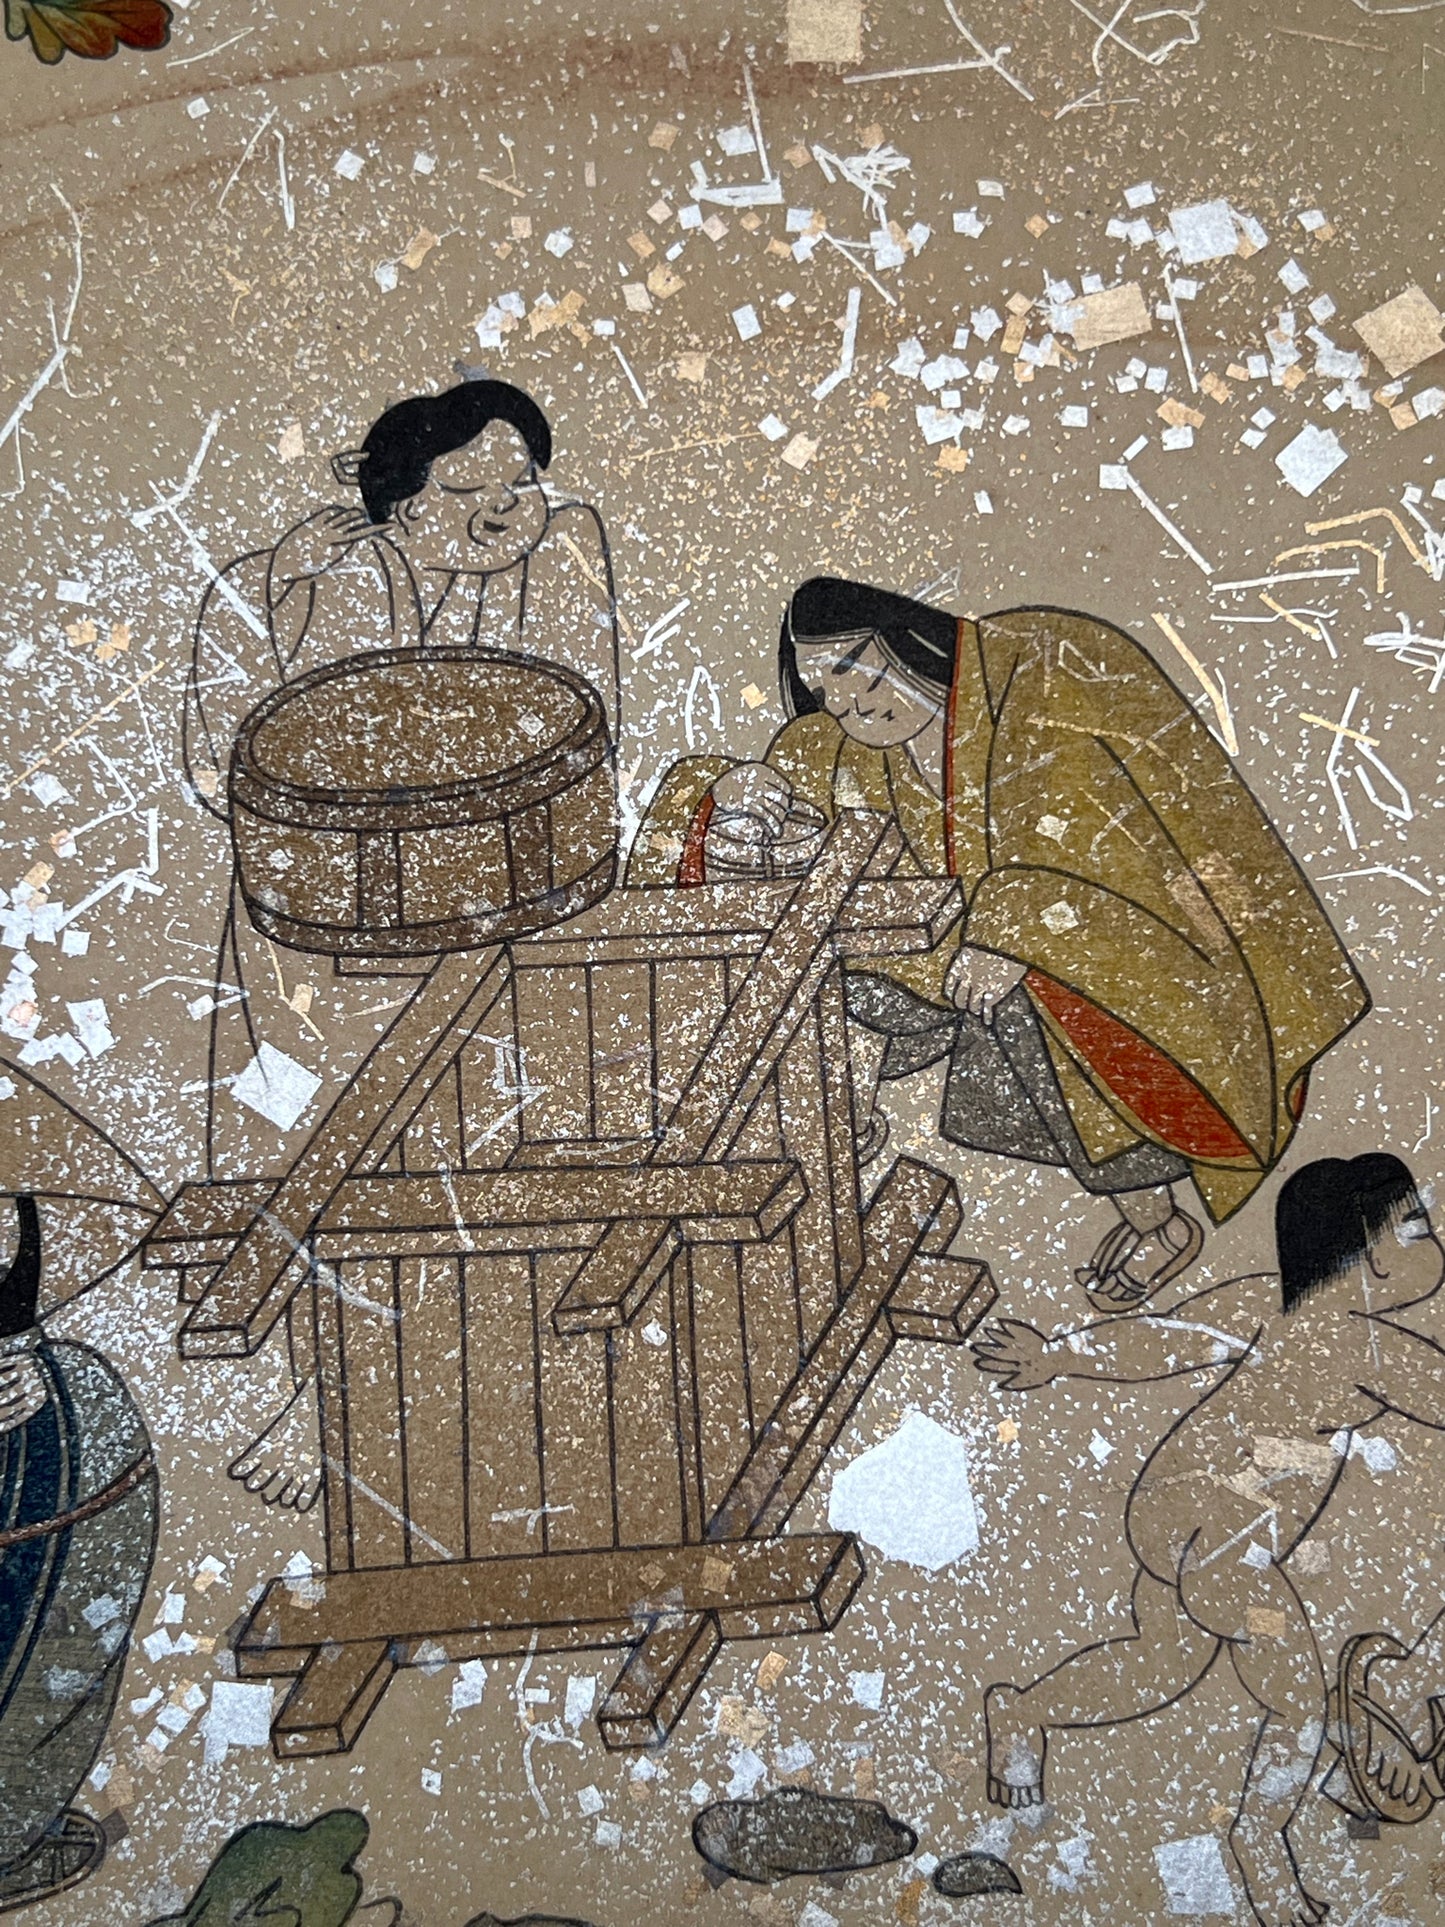 Estampe japonaise en forme d'éventail parsemée de fragments d'or et d'argent, gros plan femmes qui puisent de l'eau, sceau en bois, puits, enfant, fragments scintillants.